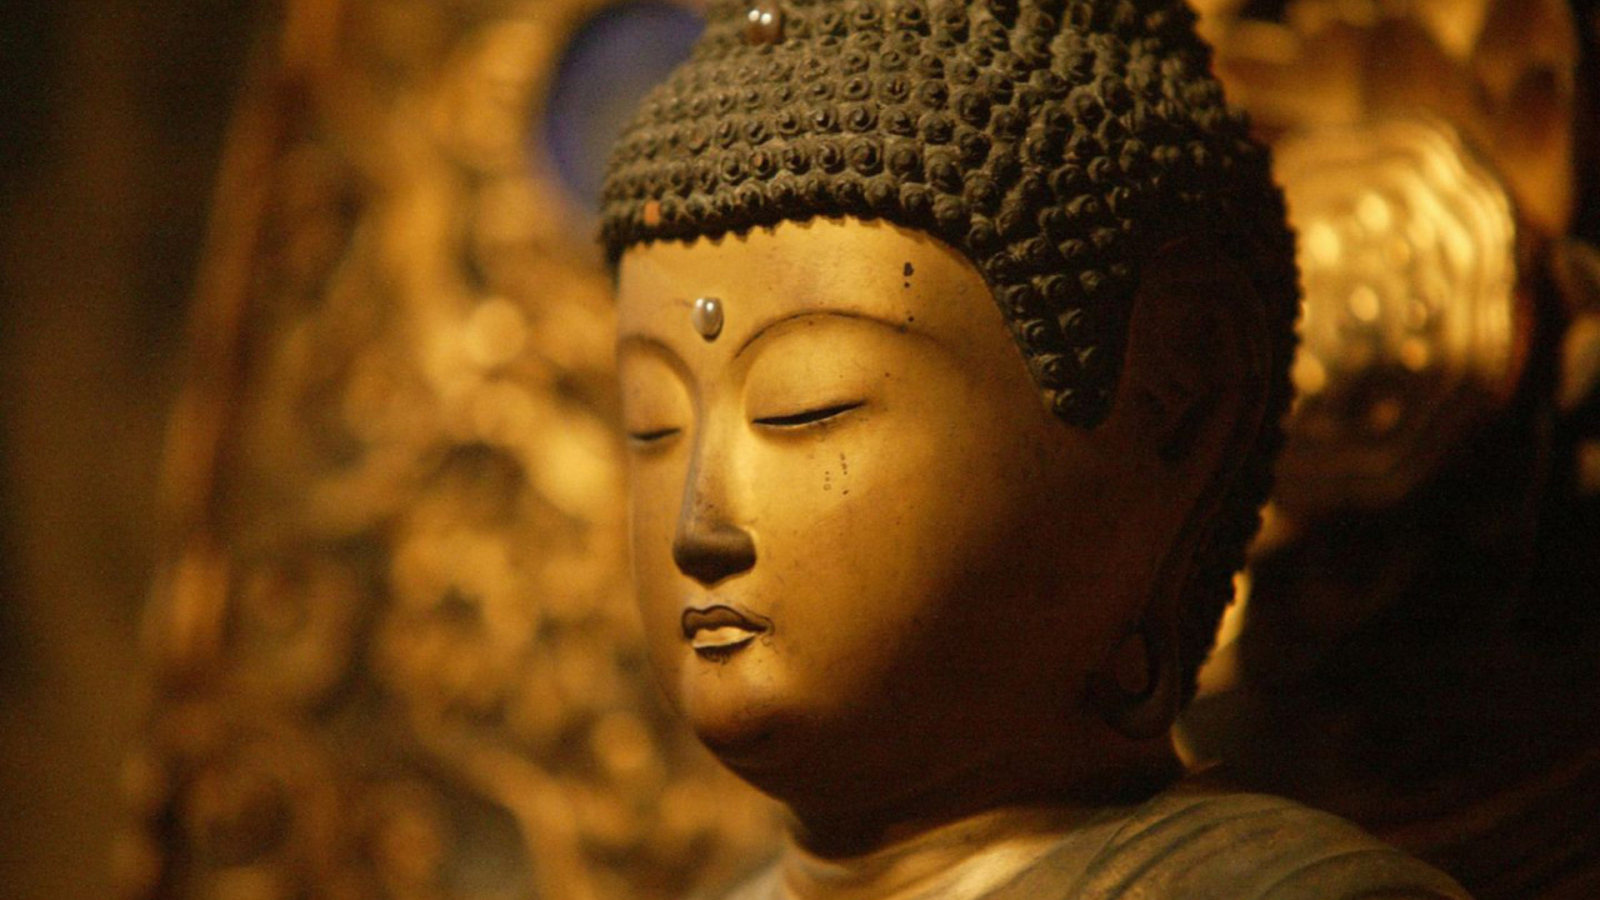 Будда с закрытыми глазами